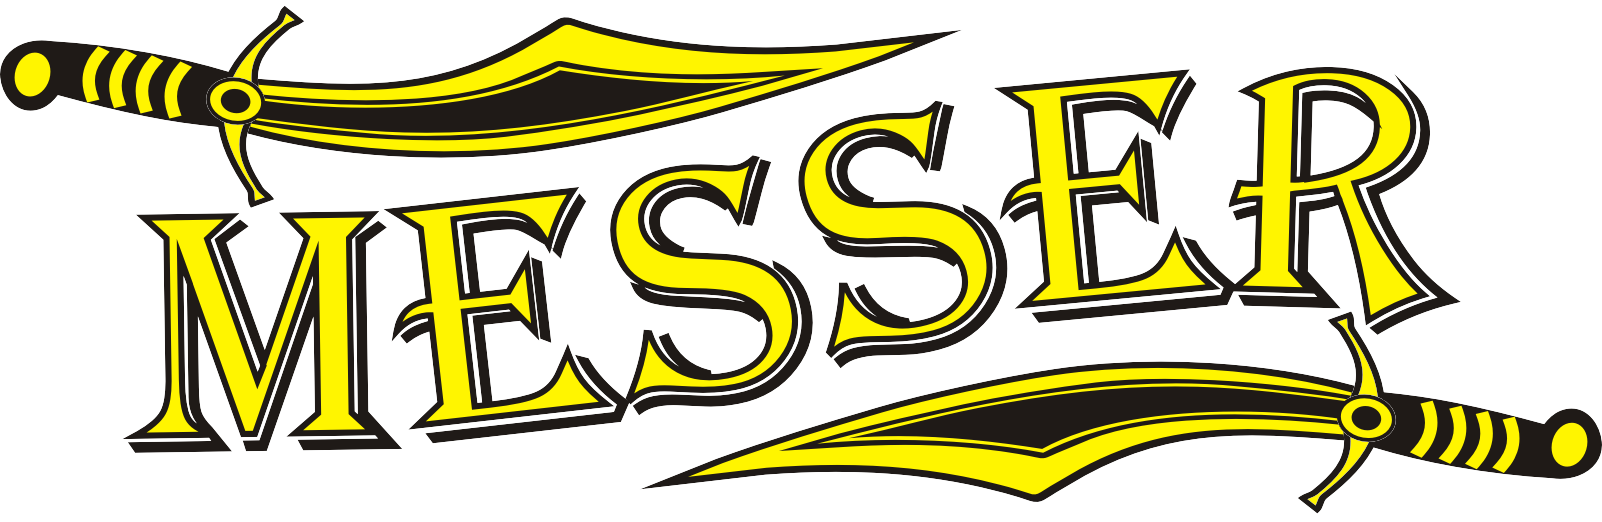 Messer_logo.png